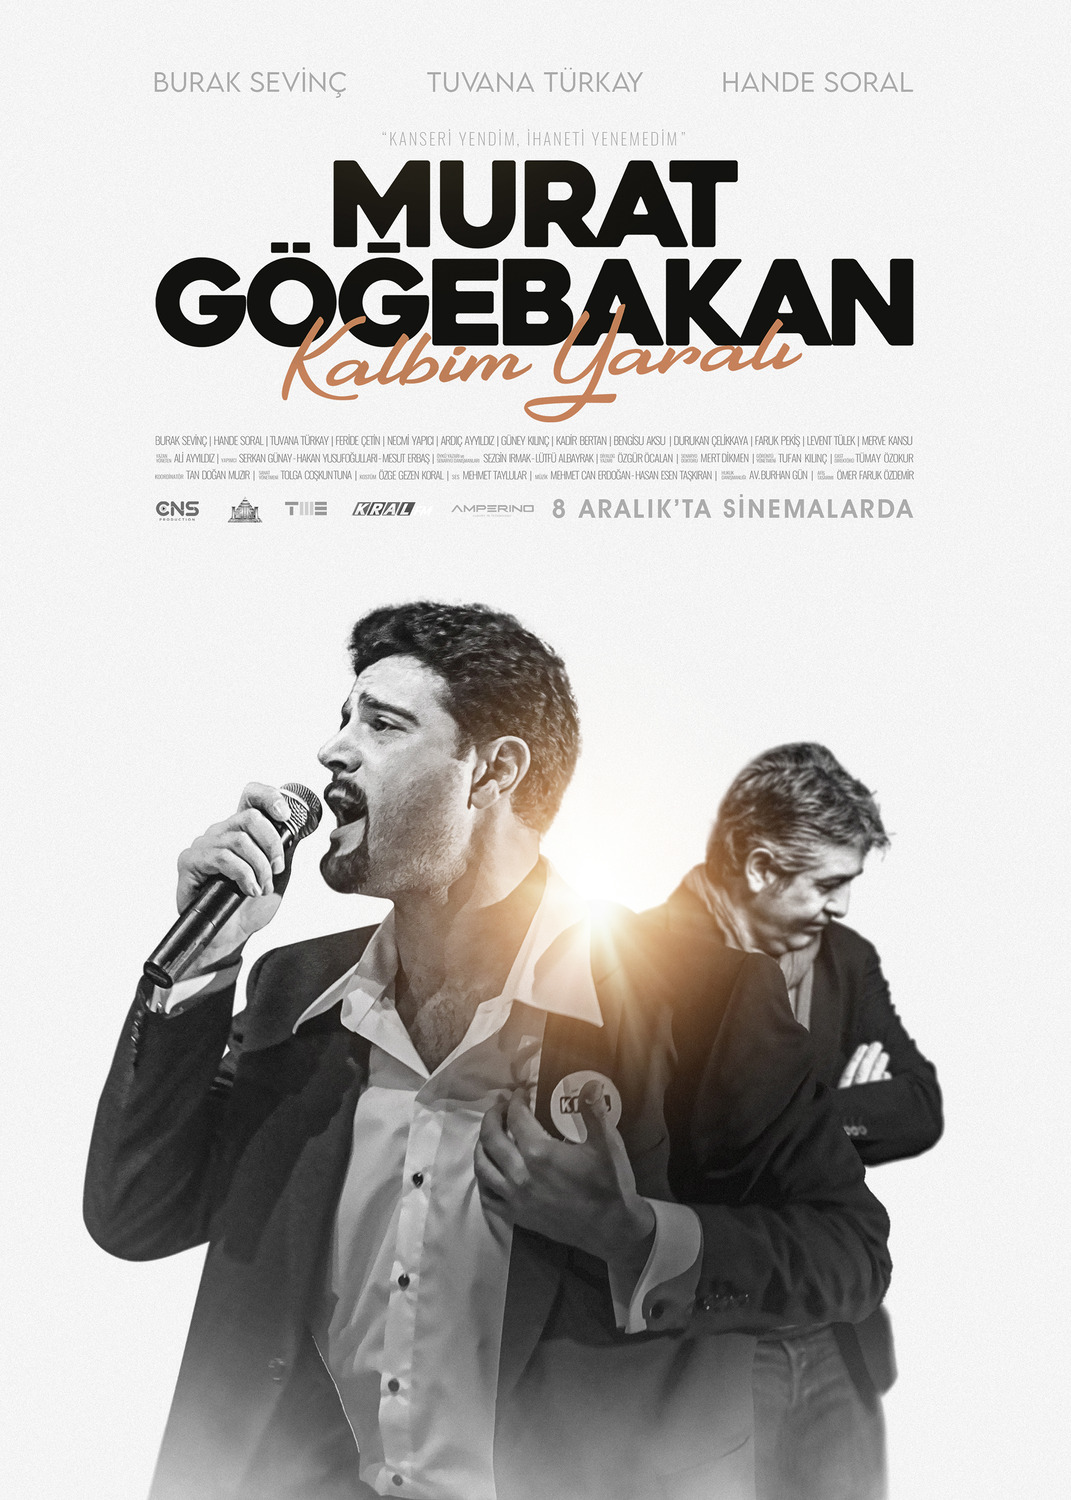 Extra Large Movie Poster Image for Murat Gögebakan: Kalbim Yarali (#12 of 14)